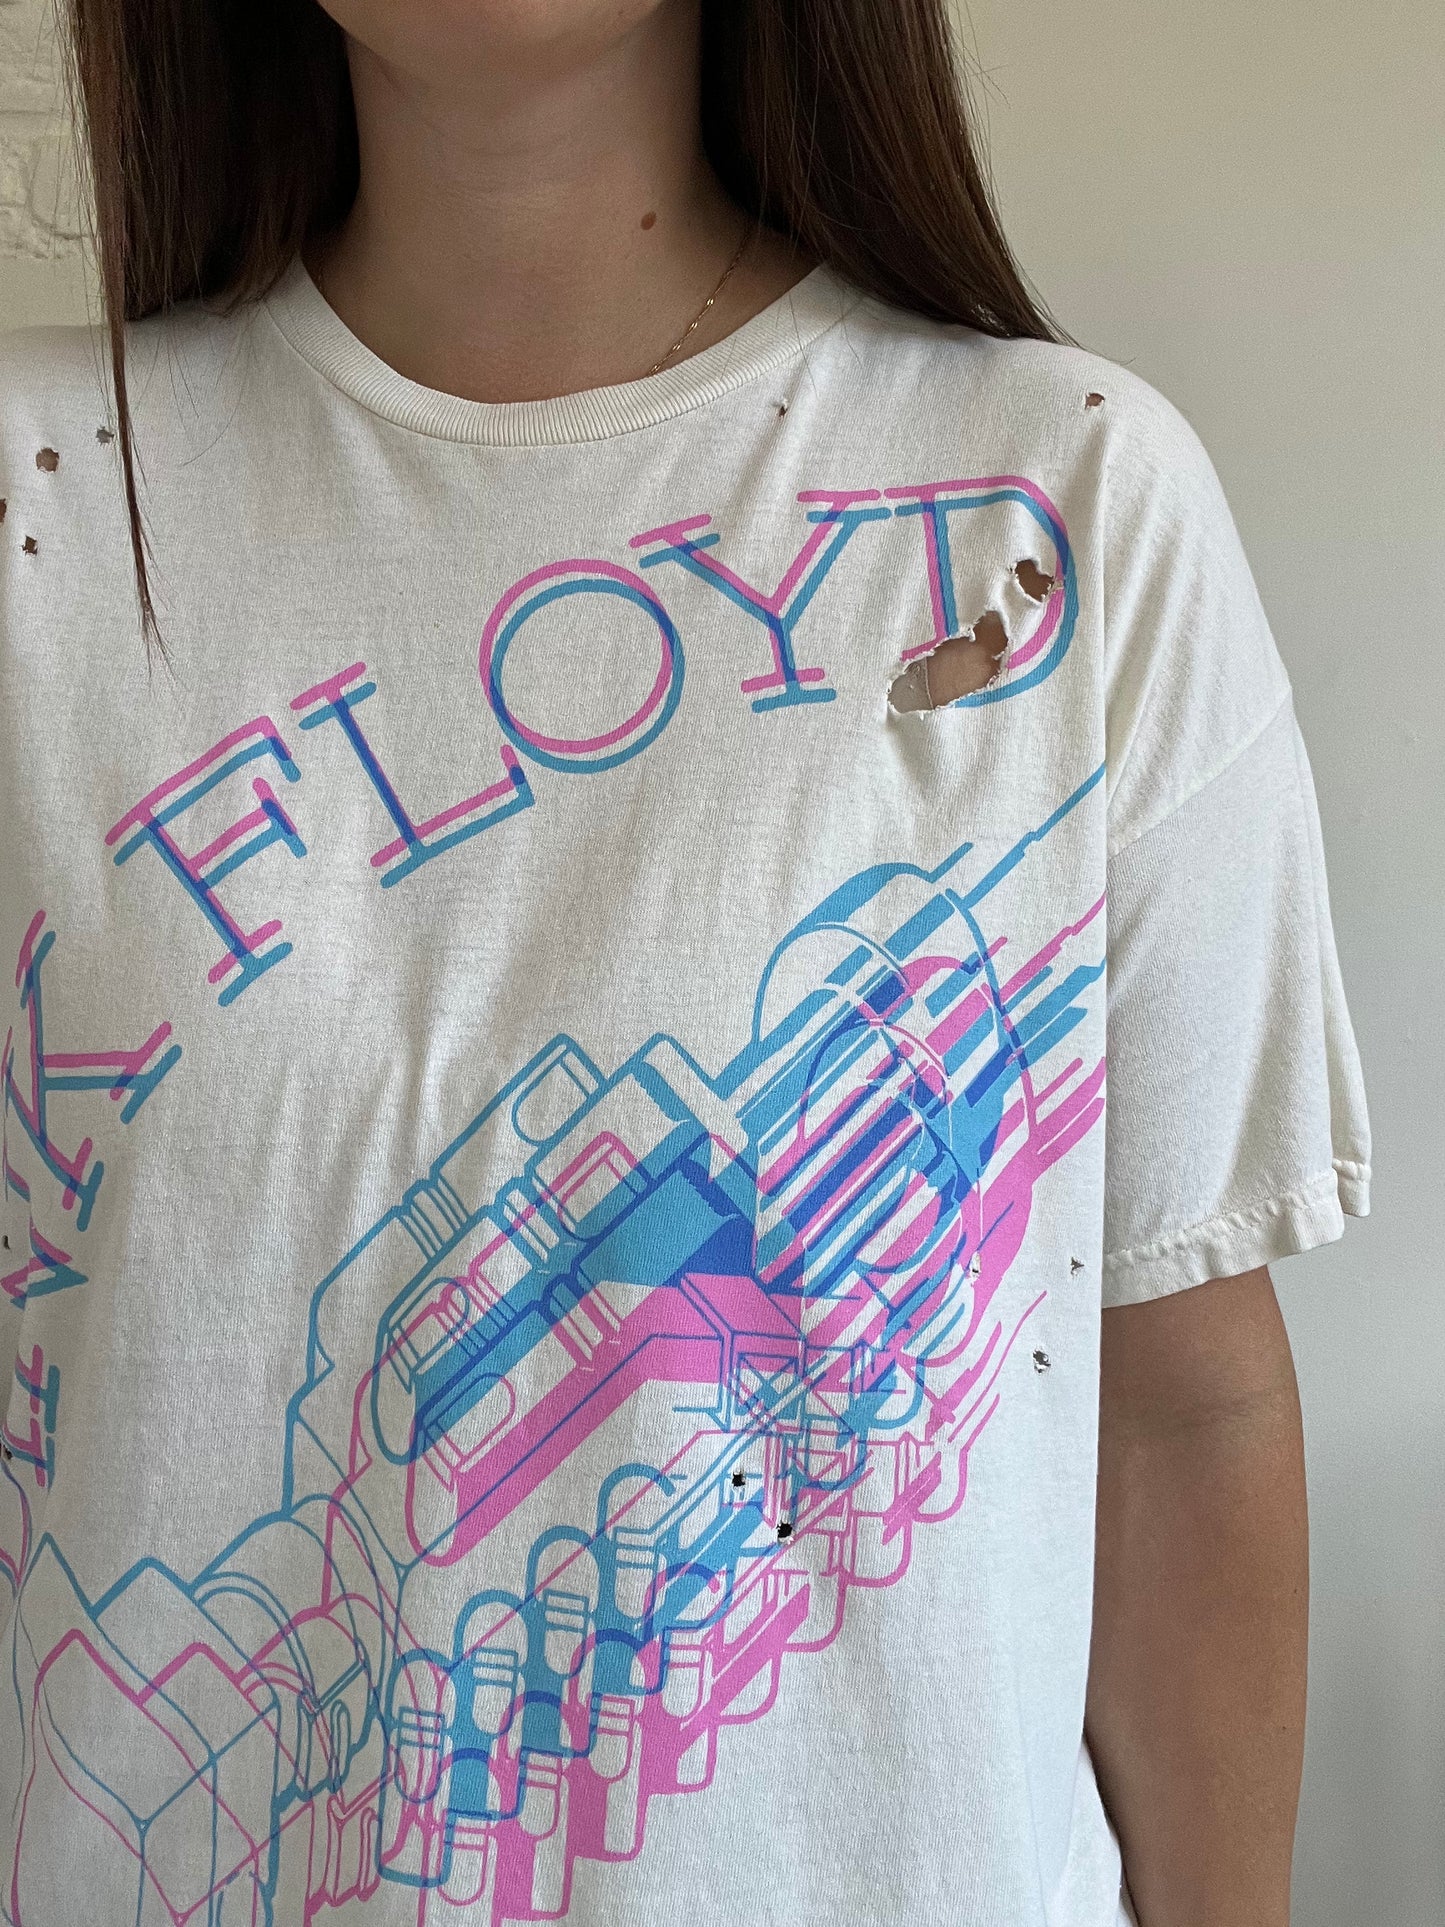 Pink Floyd Have a Cigar Thrashed T-Shirt - XL